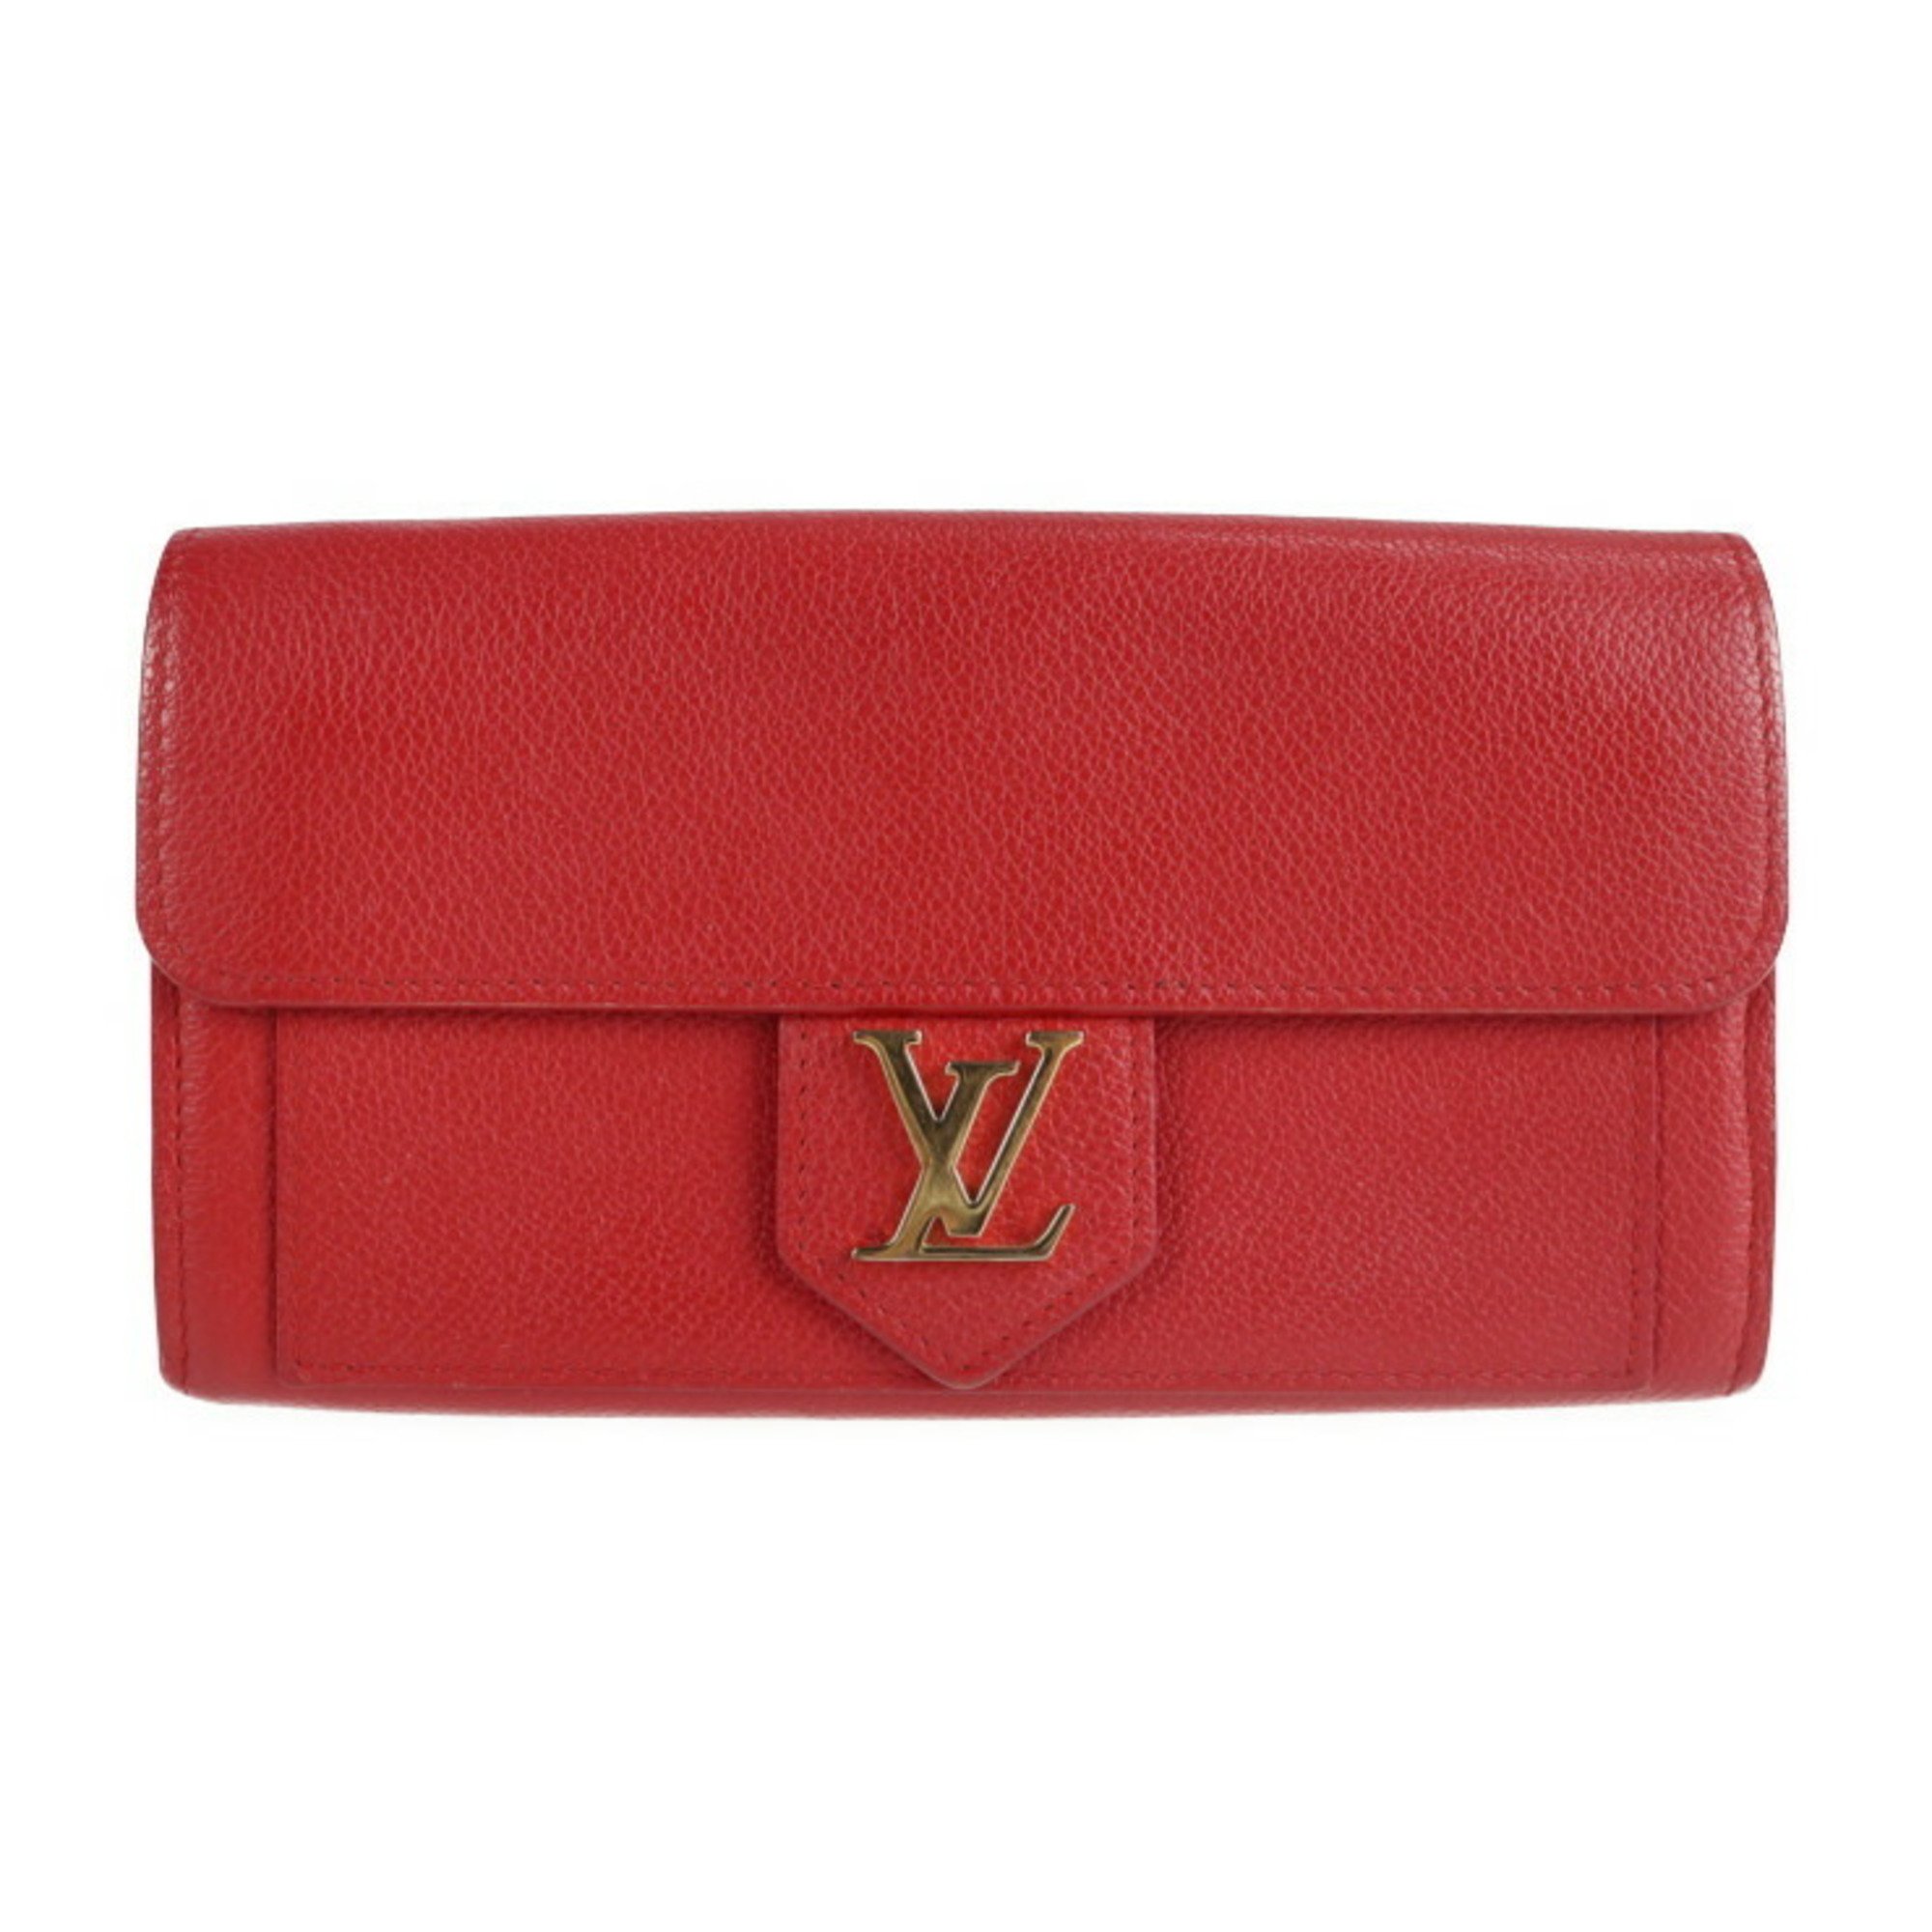 LOUIS VUITTON Louis Vuitton Portefeuille Lock Me Long Wallet M61277 Leather Ruby